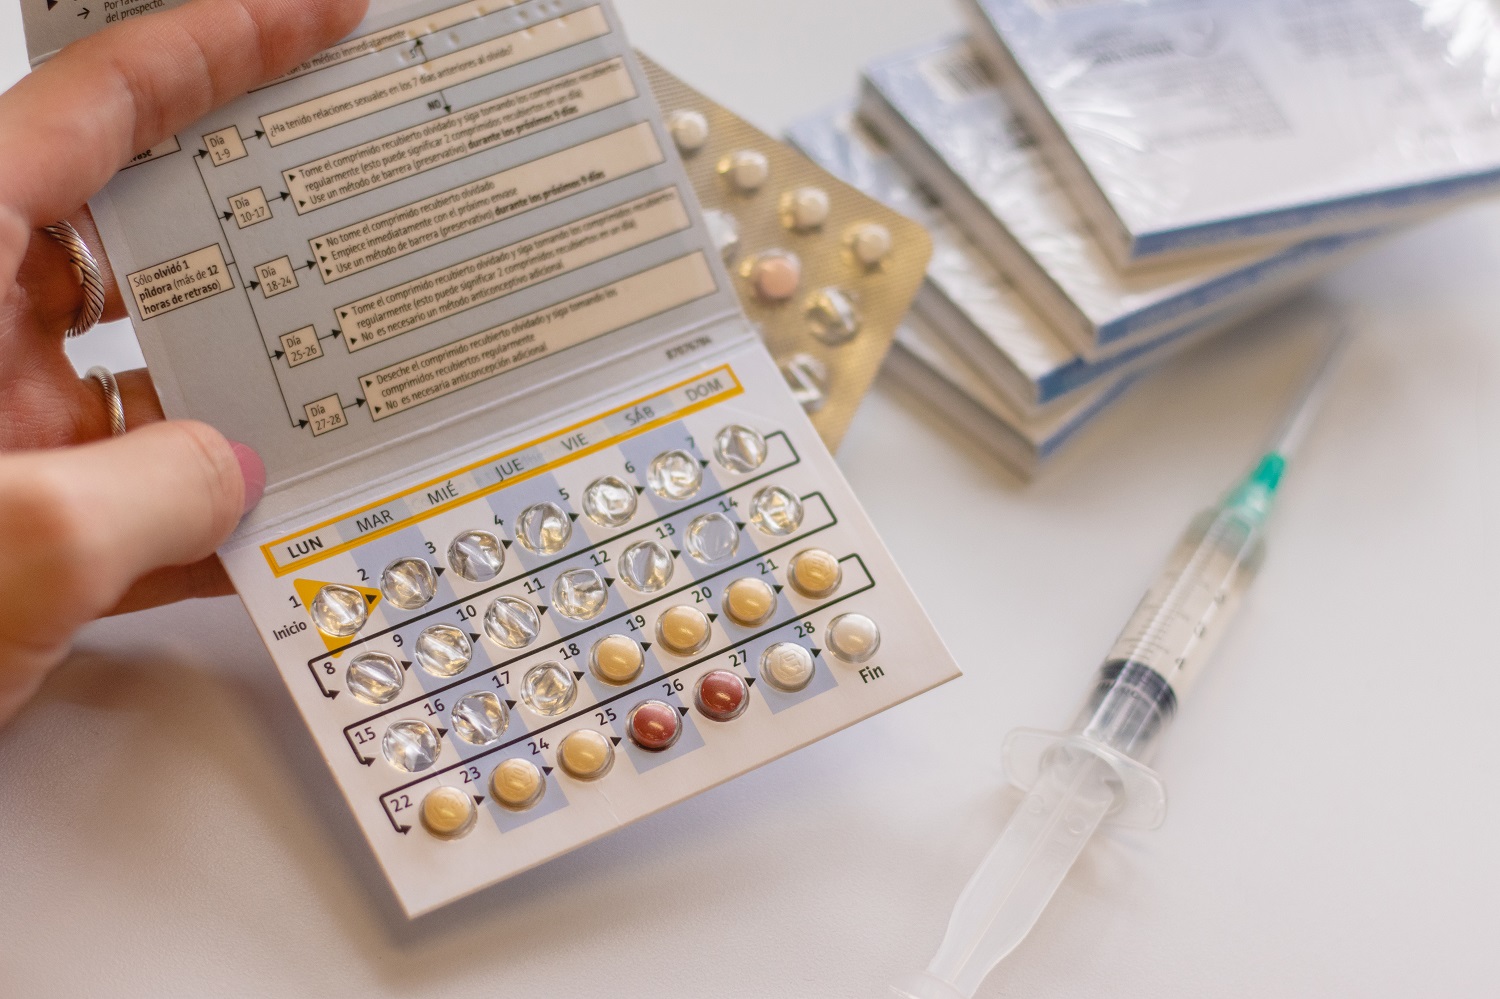 Pastillas e inyección anticonceptiva